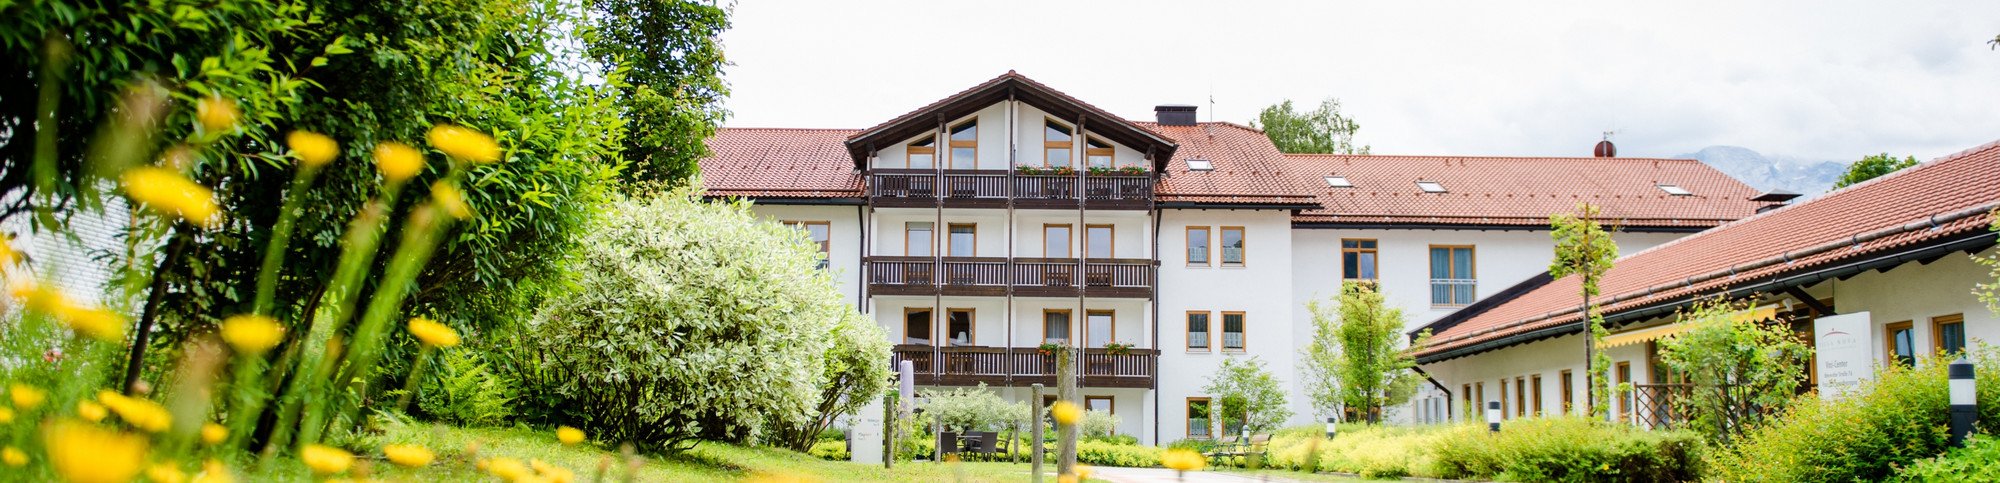 Seniorenheim in Garmisch-Partenkirchen